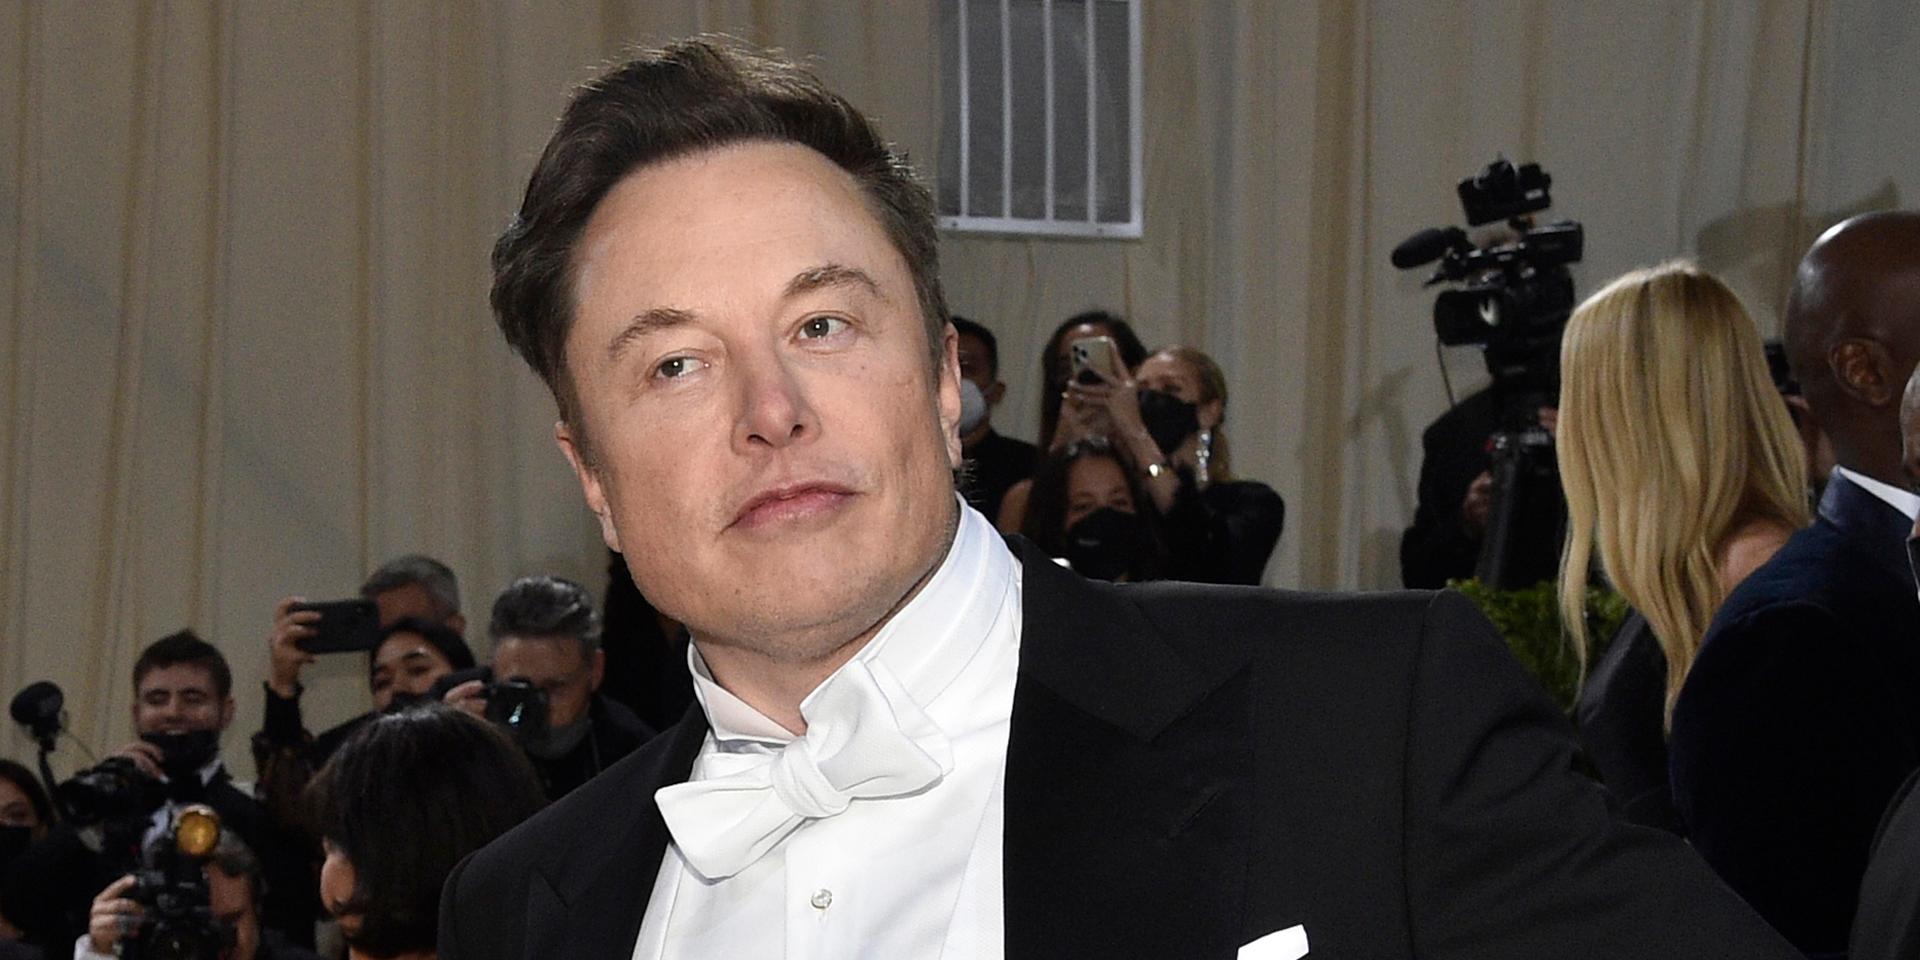 Världens rikaste person Elon Musk under en gala tidigare i år.